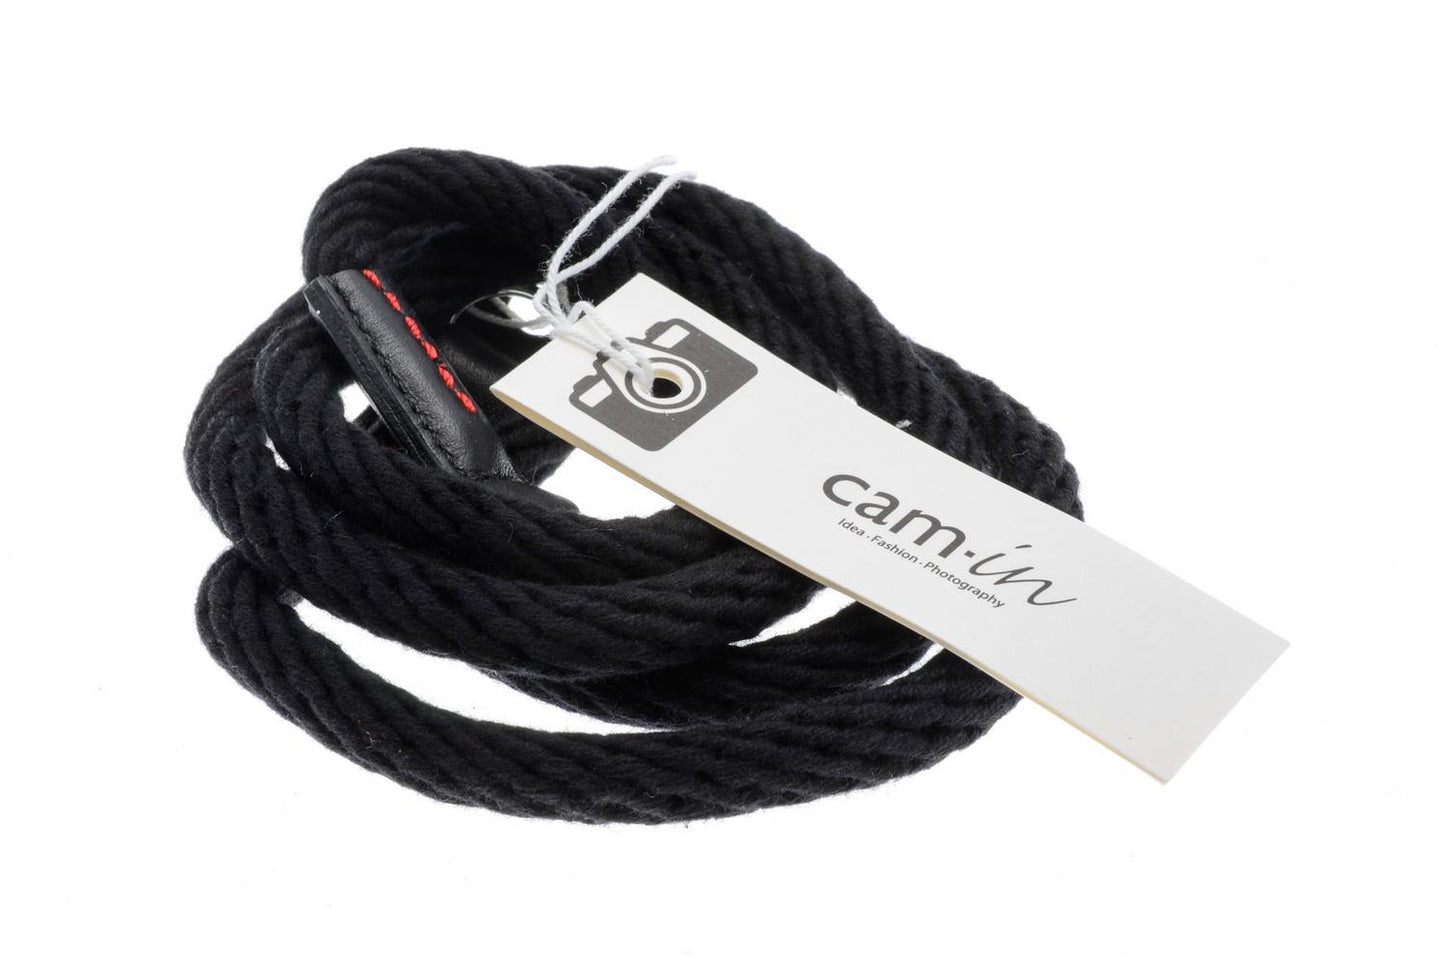 Cam-In Black Woven Cotton Rope Camera Strap - Accessory